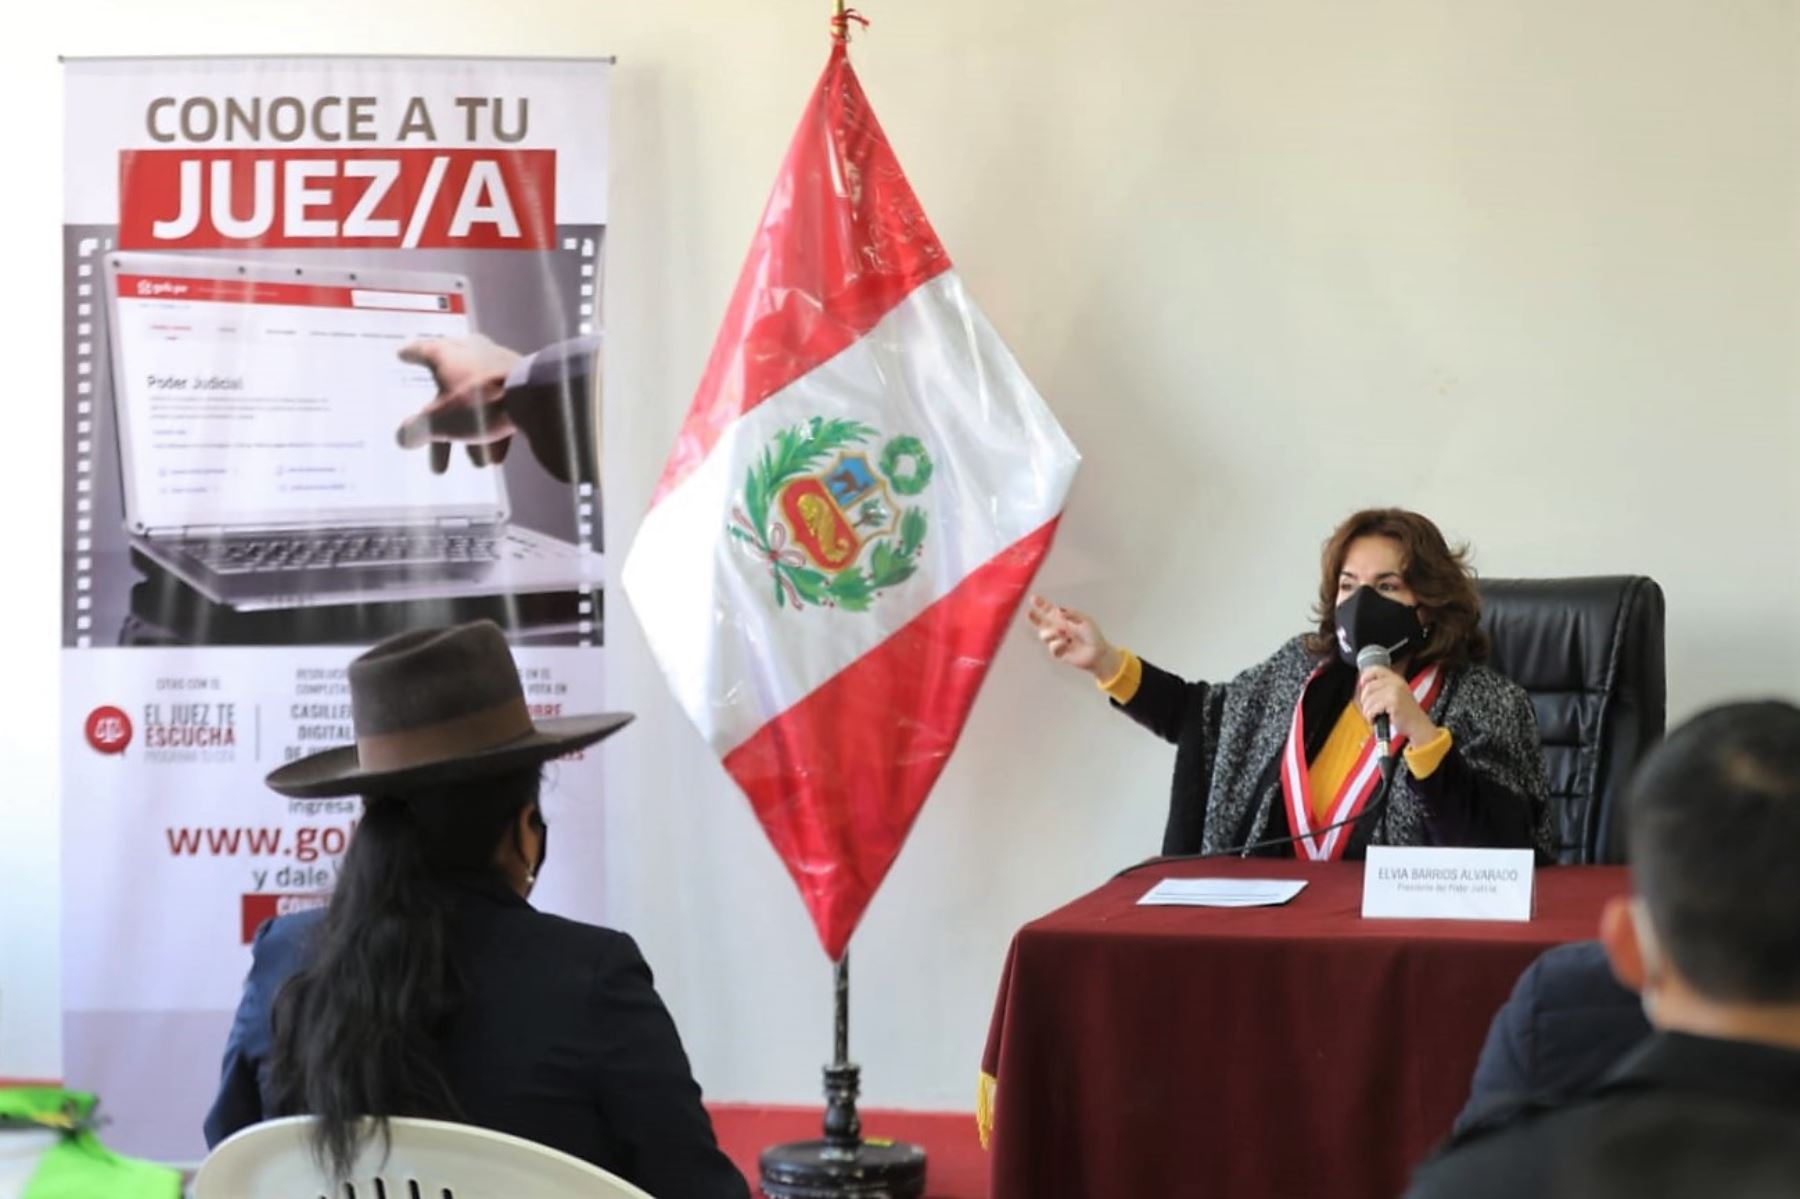 La magistrada Elvia Barrios, presidenta del Poder Judicial, sostuvo una reunión de trabajo con jueves de paz de la provincia de Candarave, Tacna.